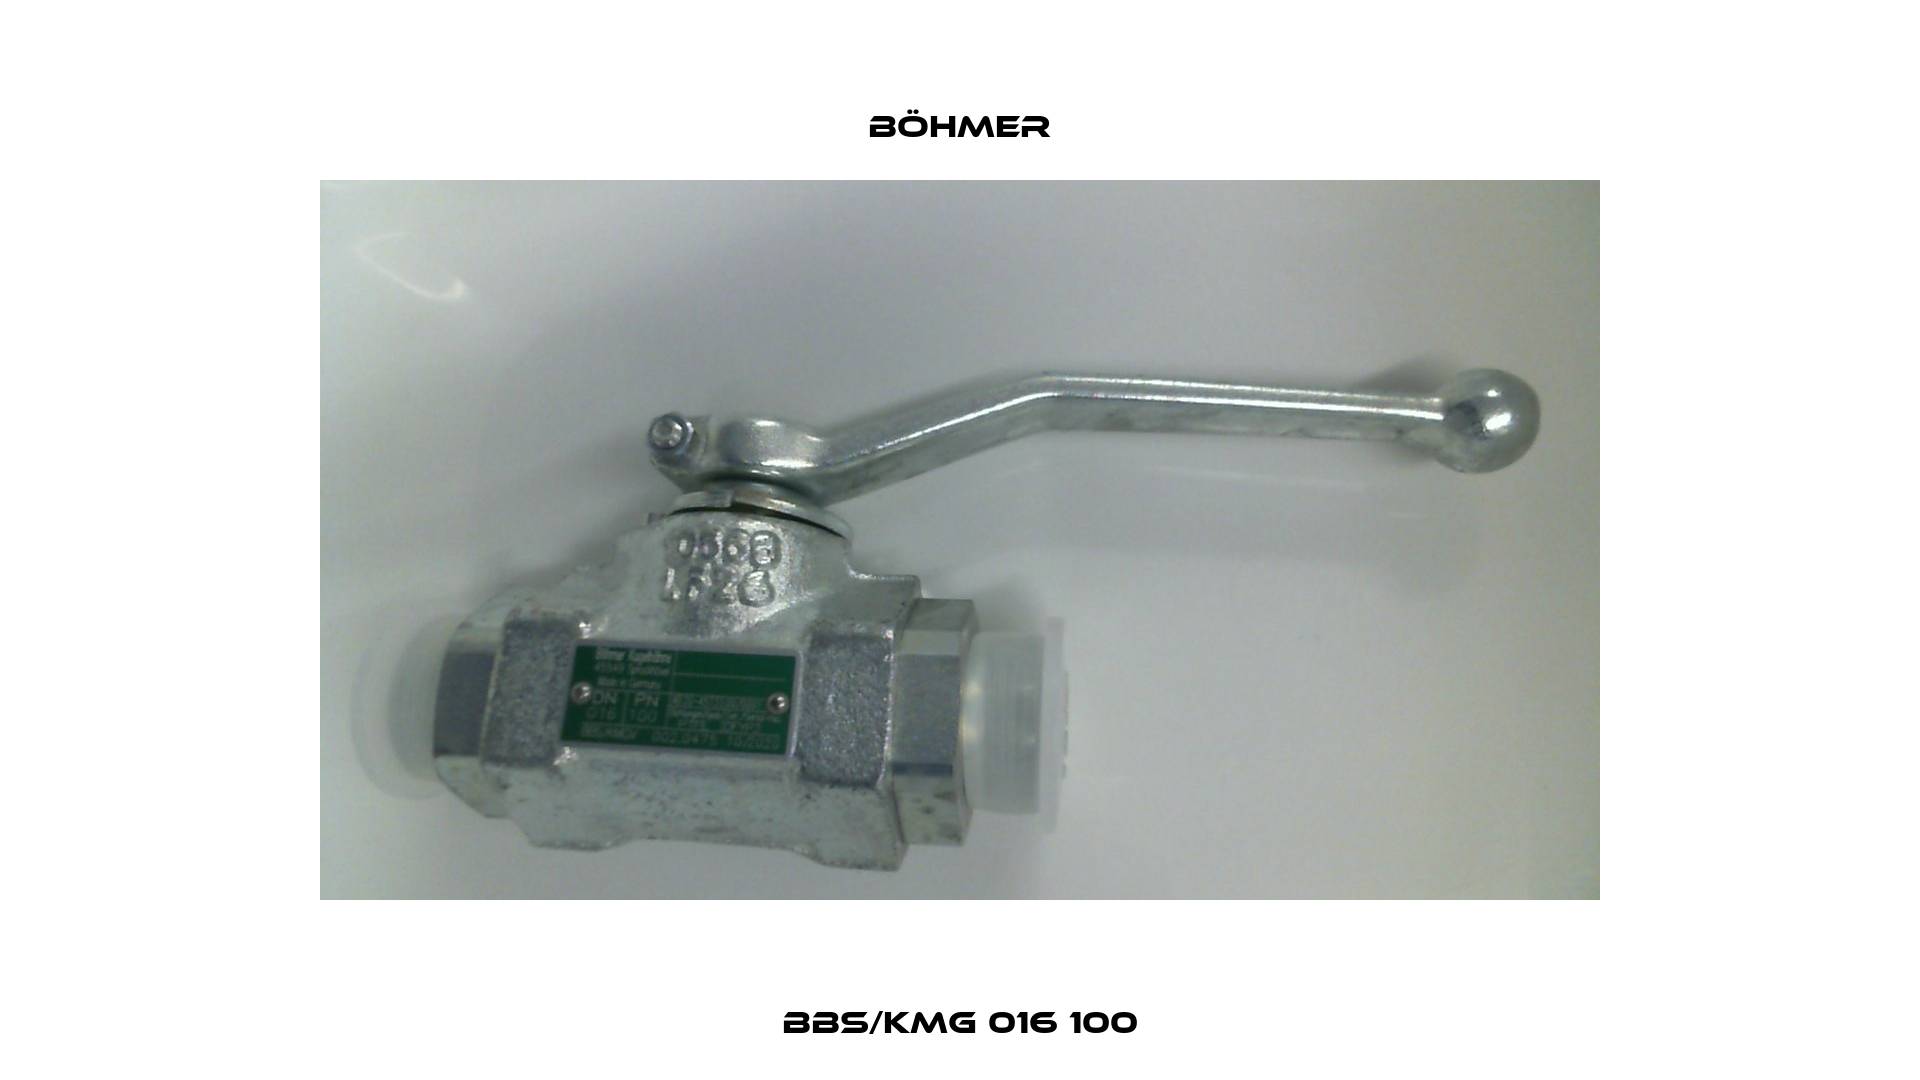 BBS/KMG 016 100 Böhmer